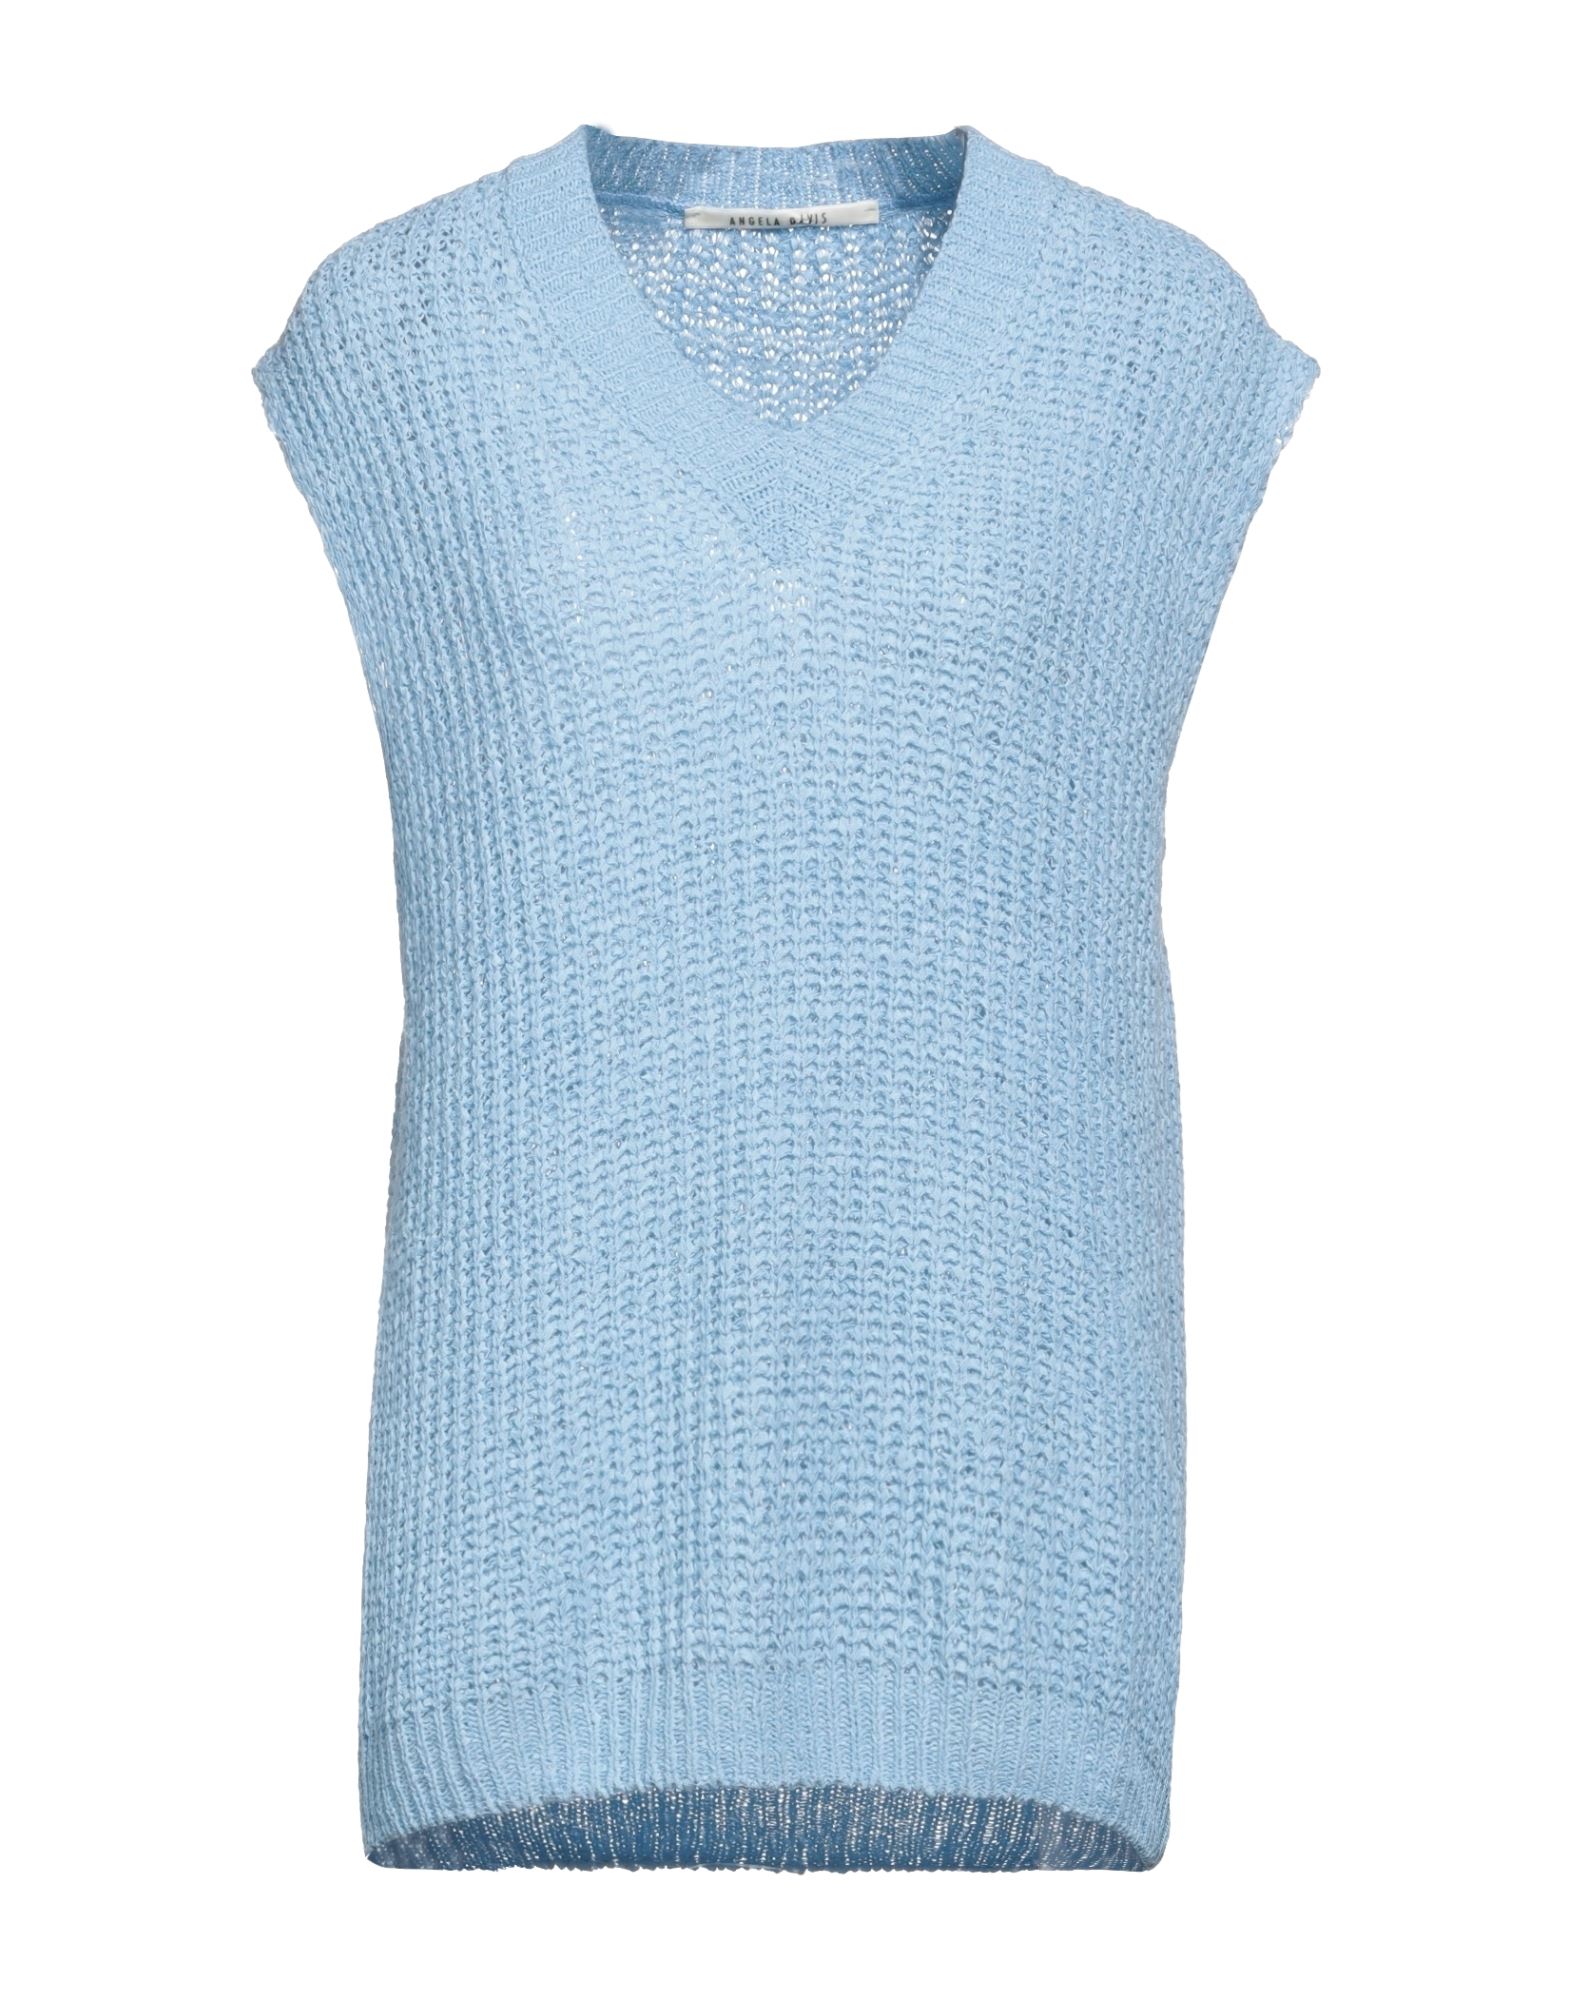 Angela Davis Sweaters In Blue